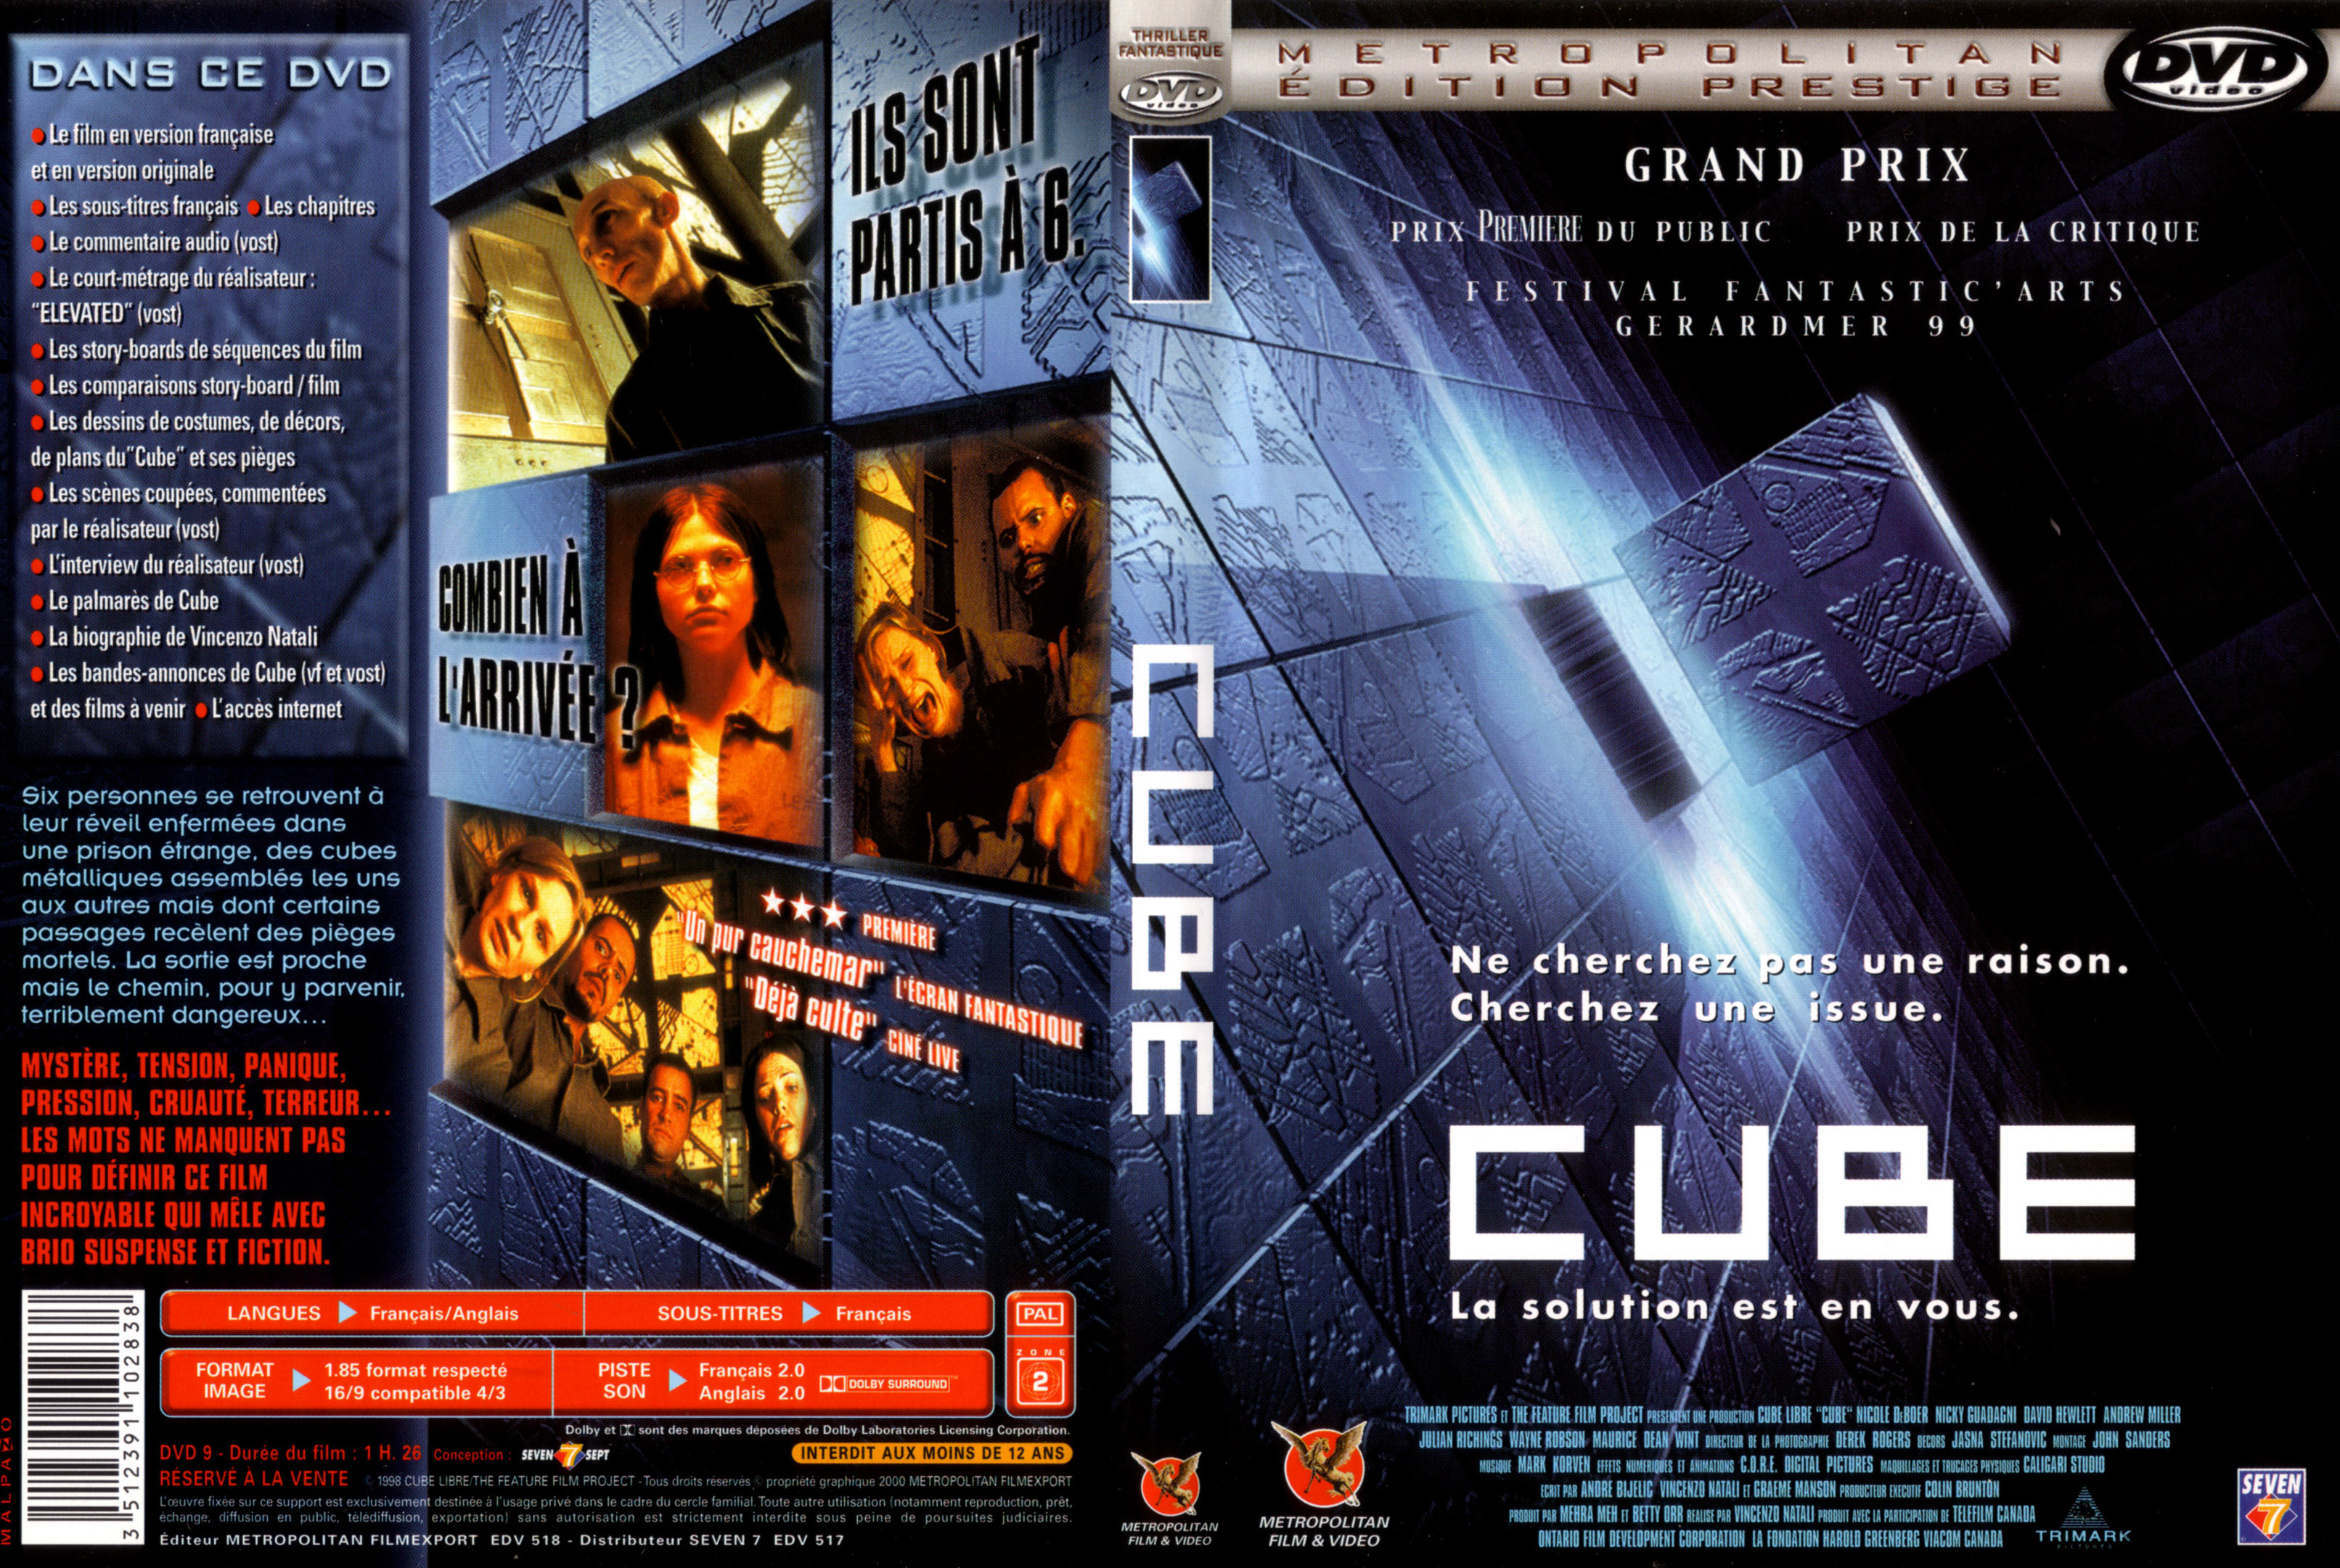 Jaquette DVD Cube